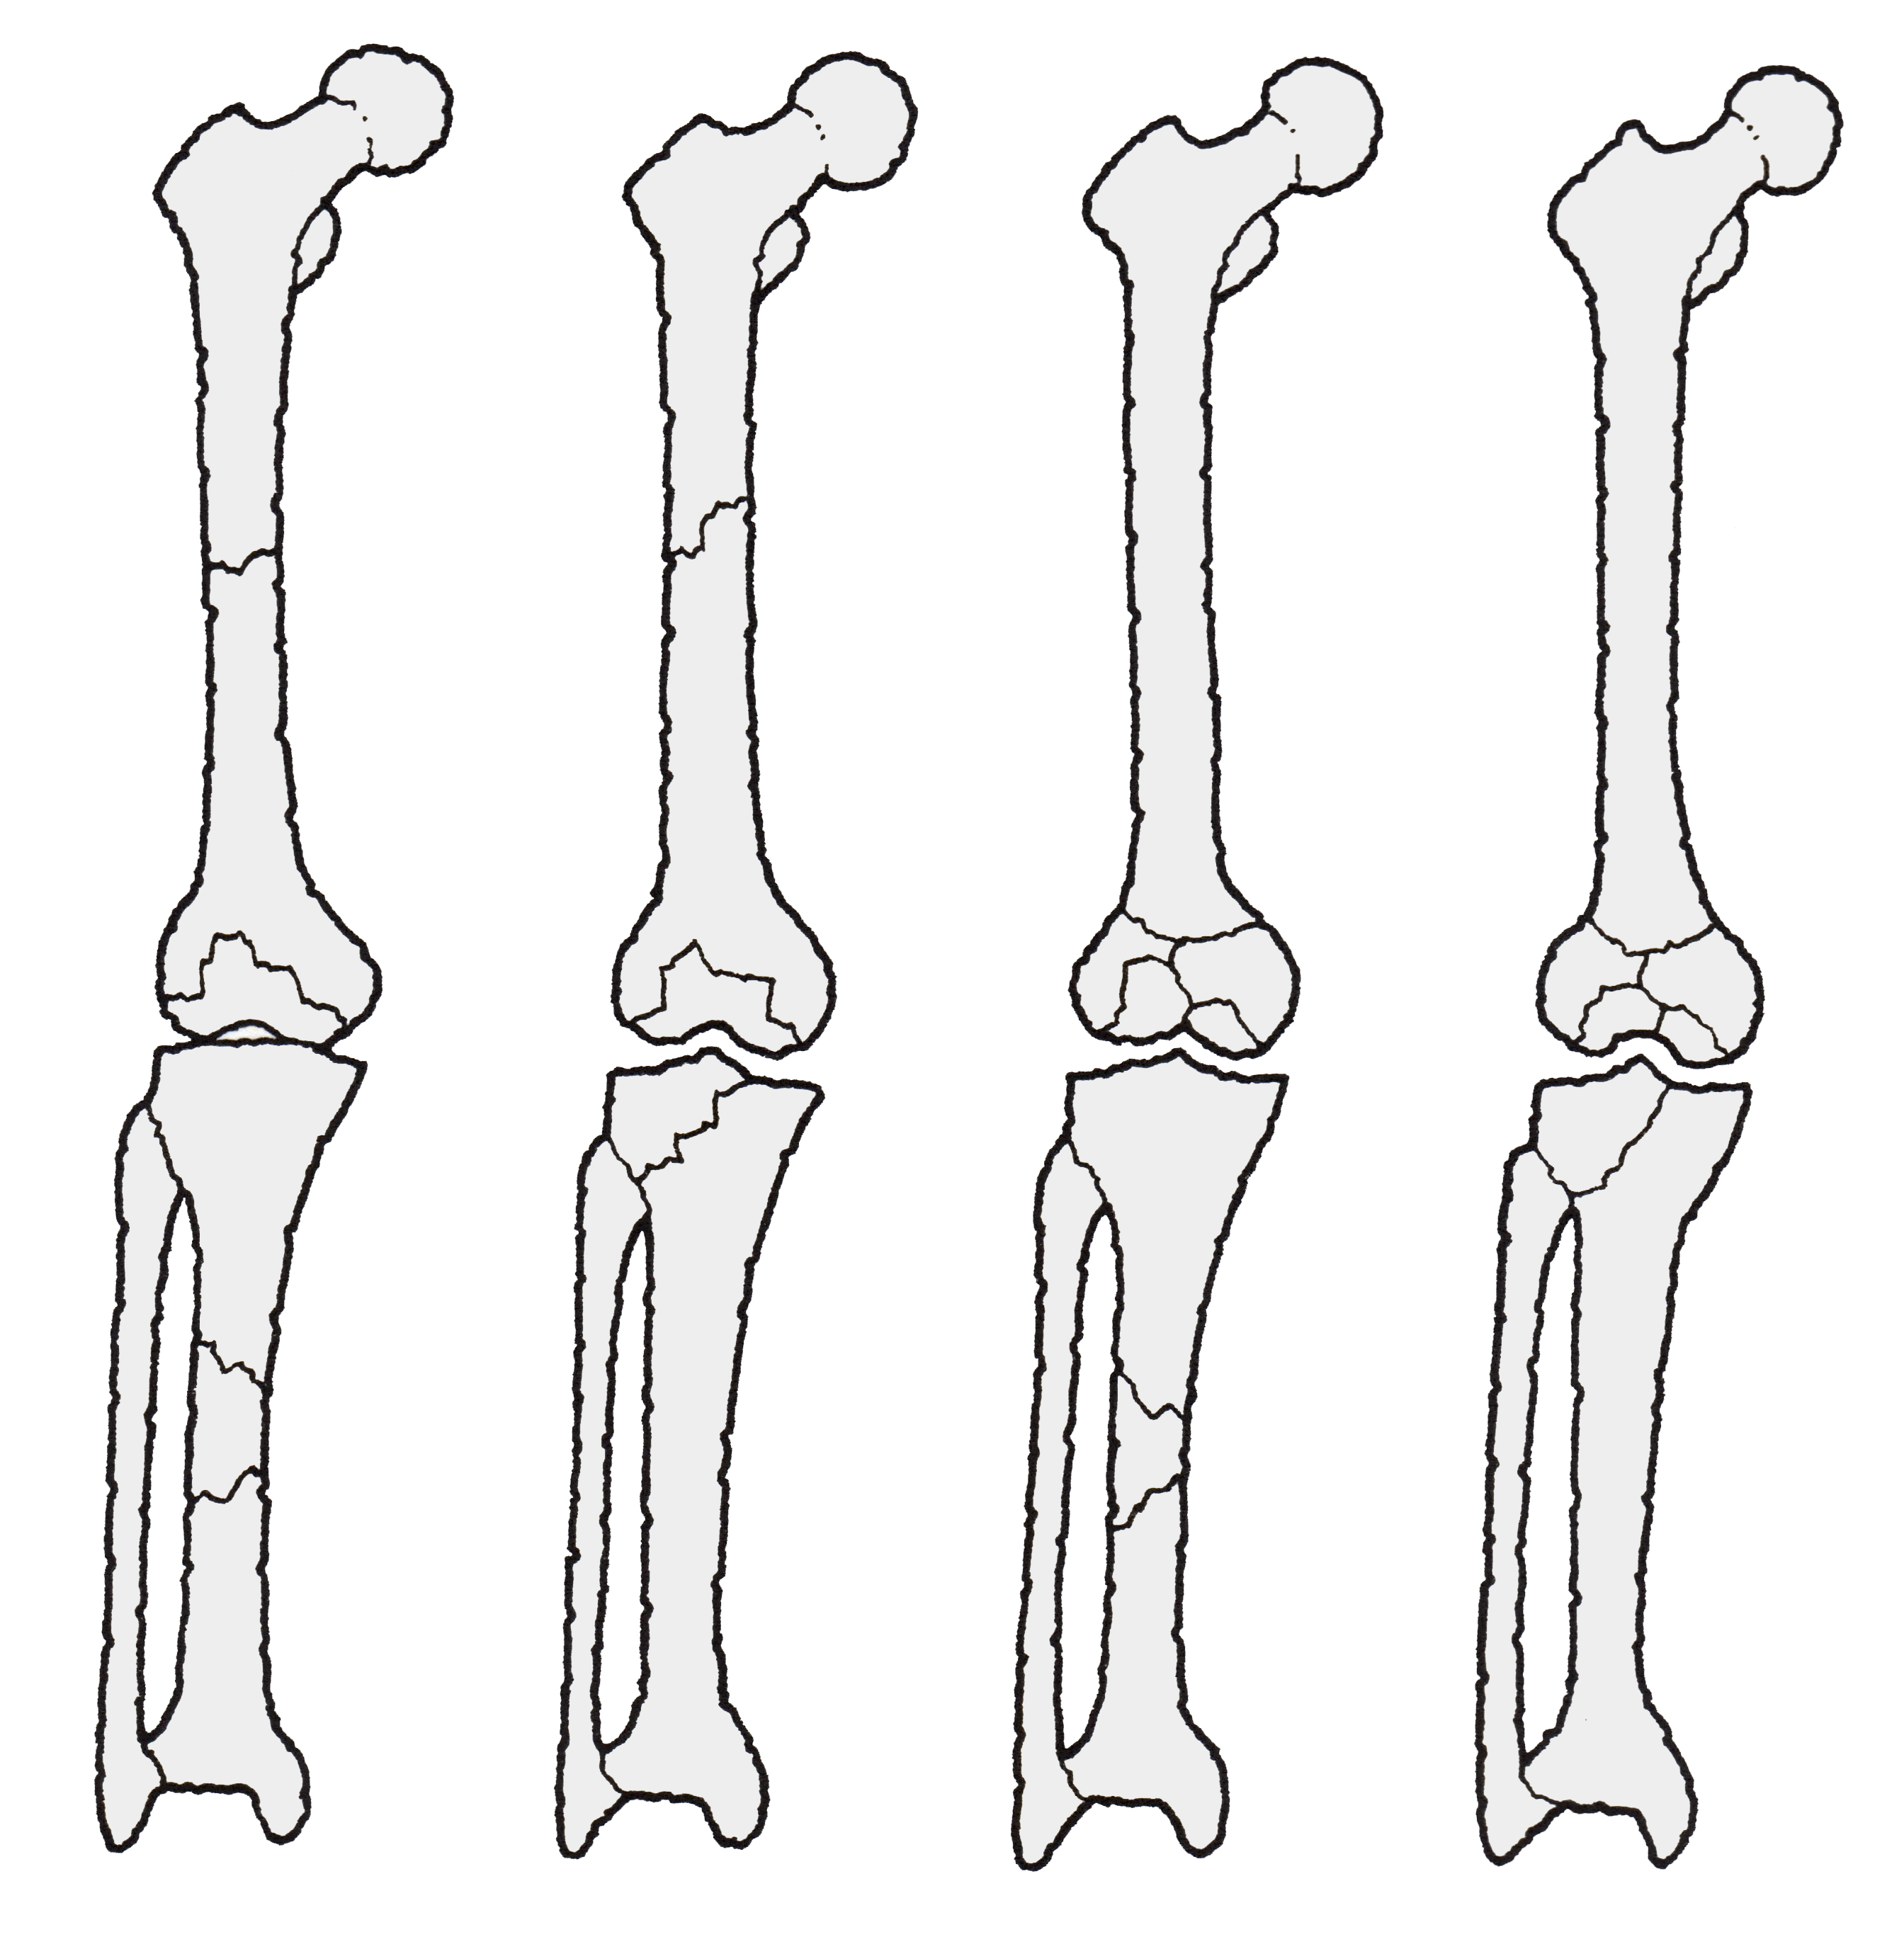 メタノート別館: 大腿骨頚部骨折の治療